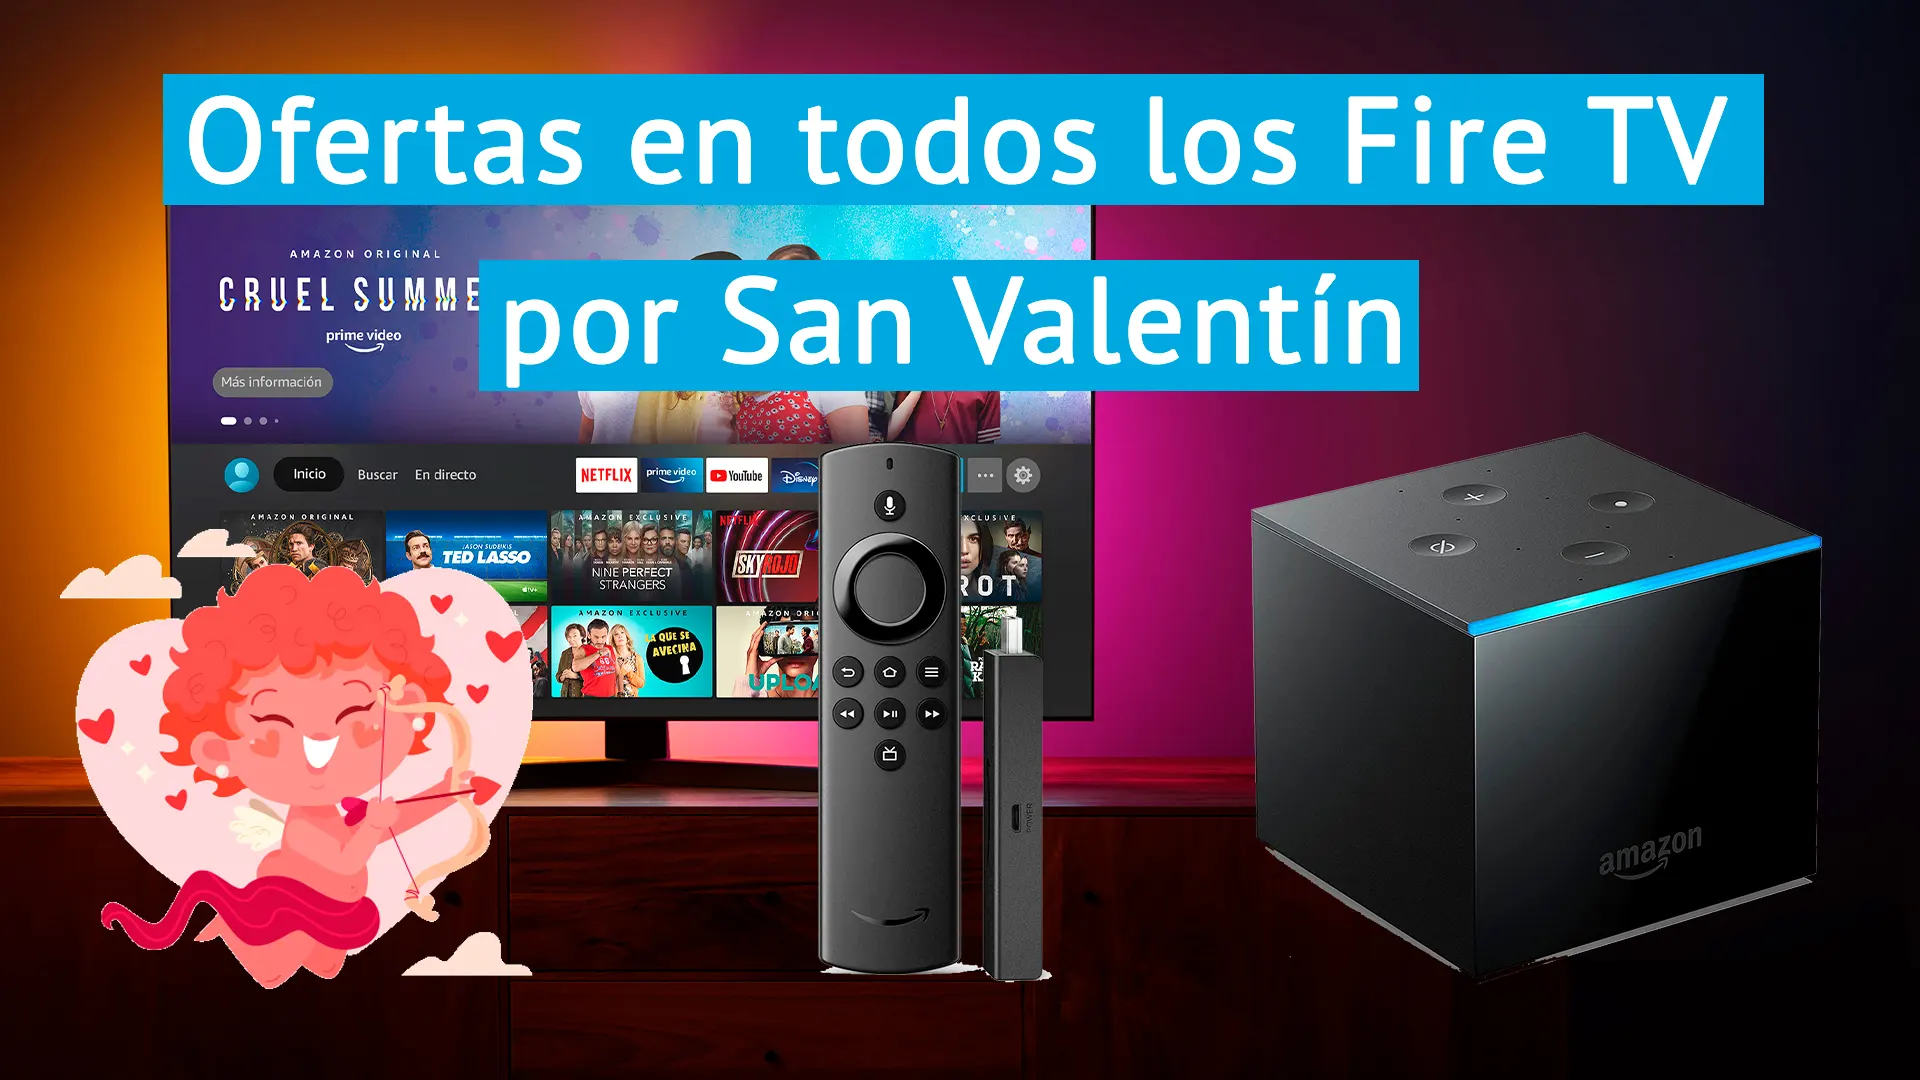 Oferta para San Valentín para convertir tu TV en una Smart TV con el Fire TV Stick